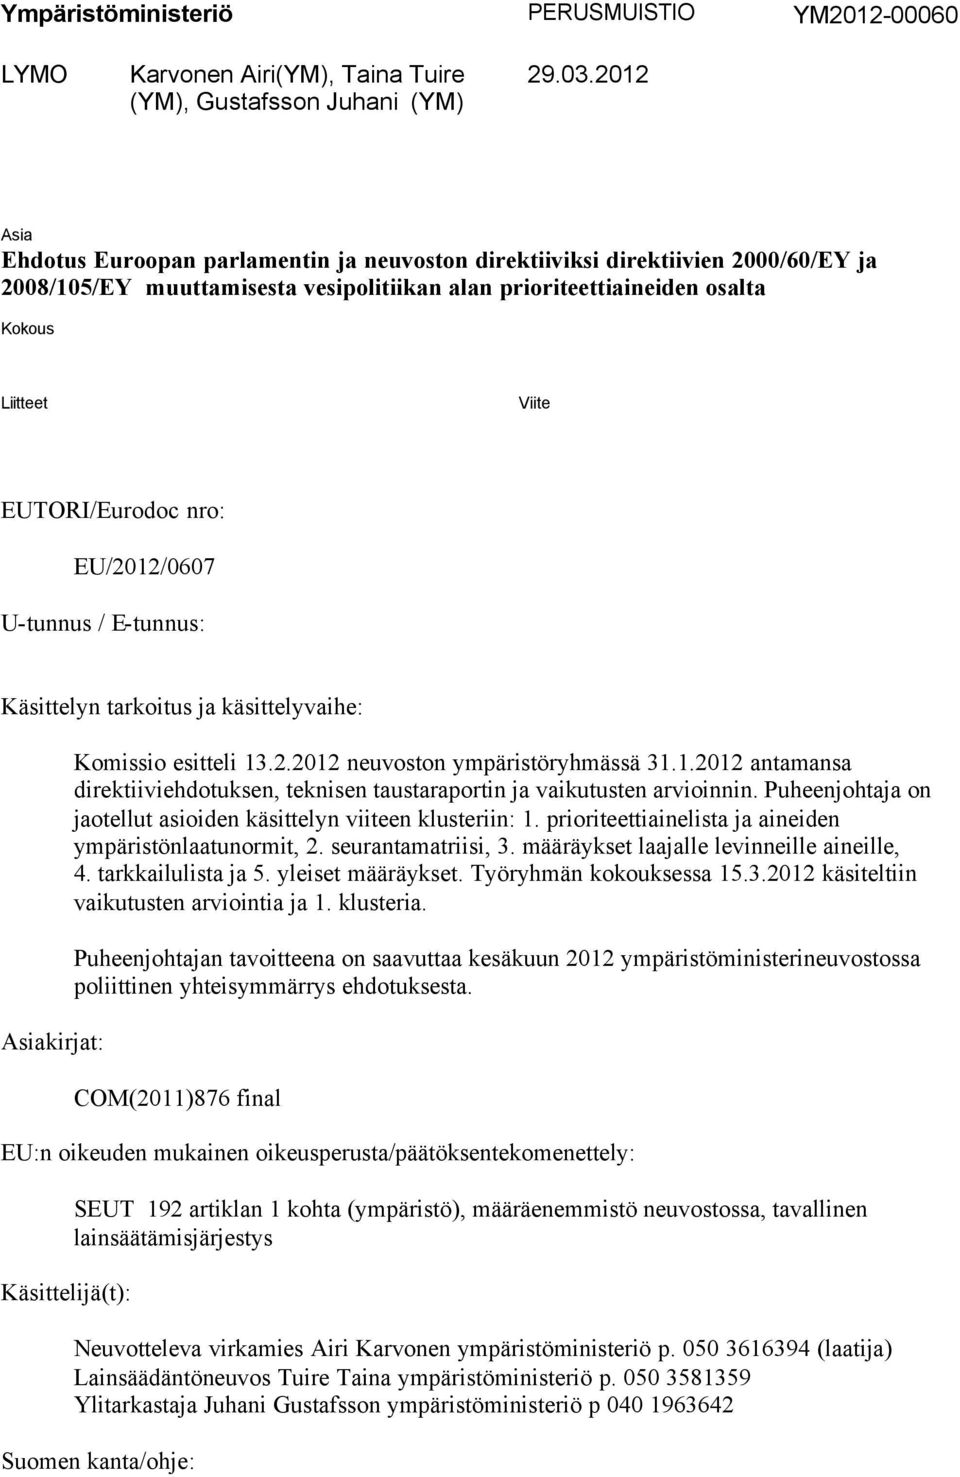 EUTORI/Eurodoc nro: EU/2012/0607 U-tunnus / E-tunnus: Käsittelyn tarkoitus ja käsittelyvaihe: Asiakirjat: Komissio esitteli 13.2.2012 neuvoston ympäristöryhmässä 31.1.2012 antamansa direktiiviehdotuksen, teknisen taustaraportin ja vaikutusten arvioinnin.